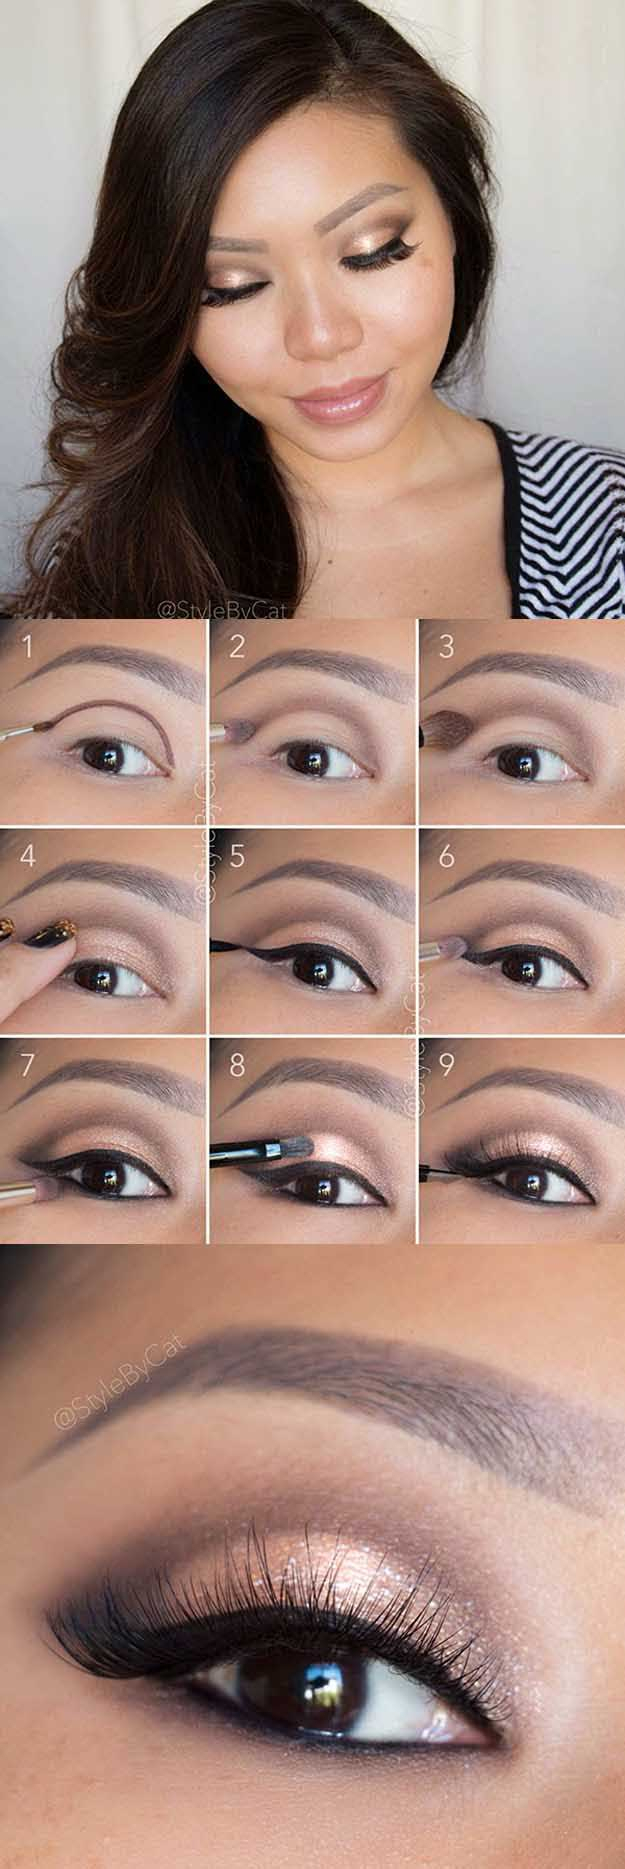 Asian Eyes Makeup 35 Best Makeup Tips For Asian Women The Goddess